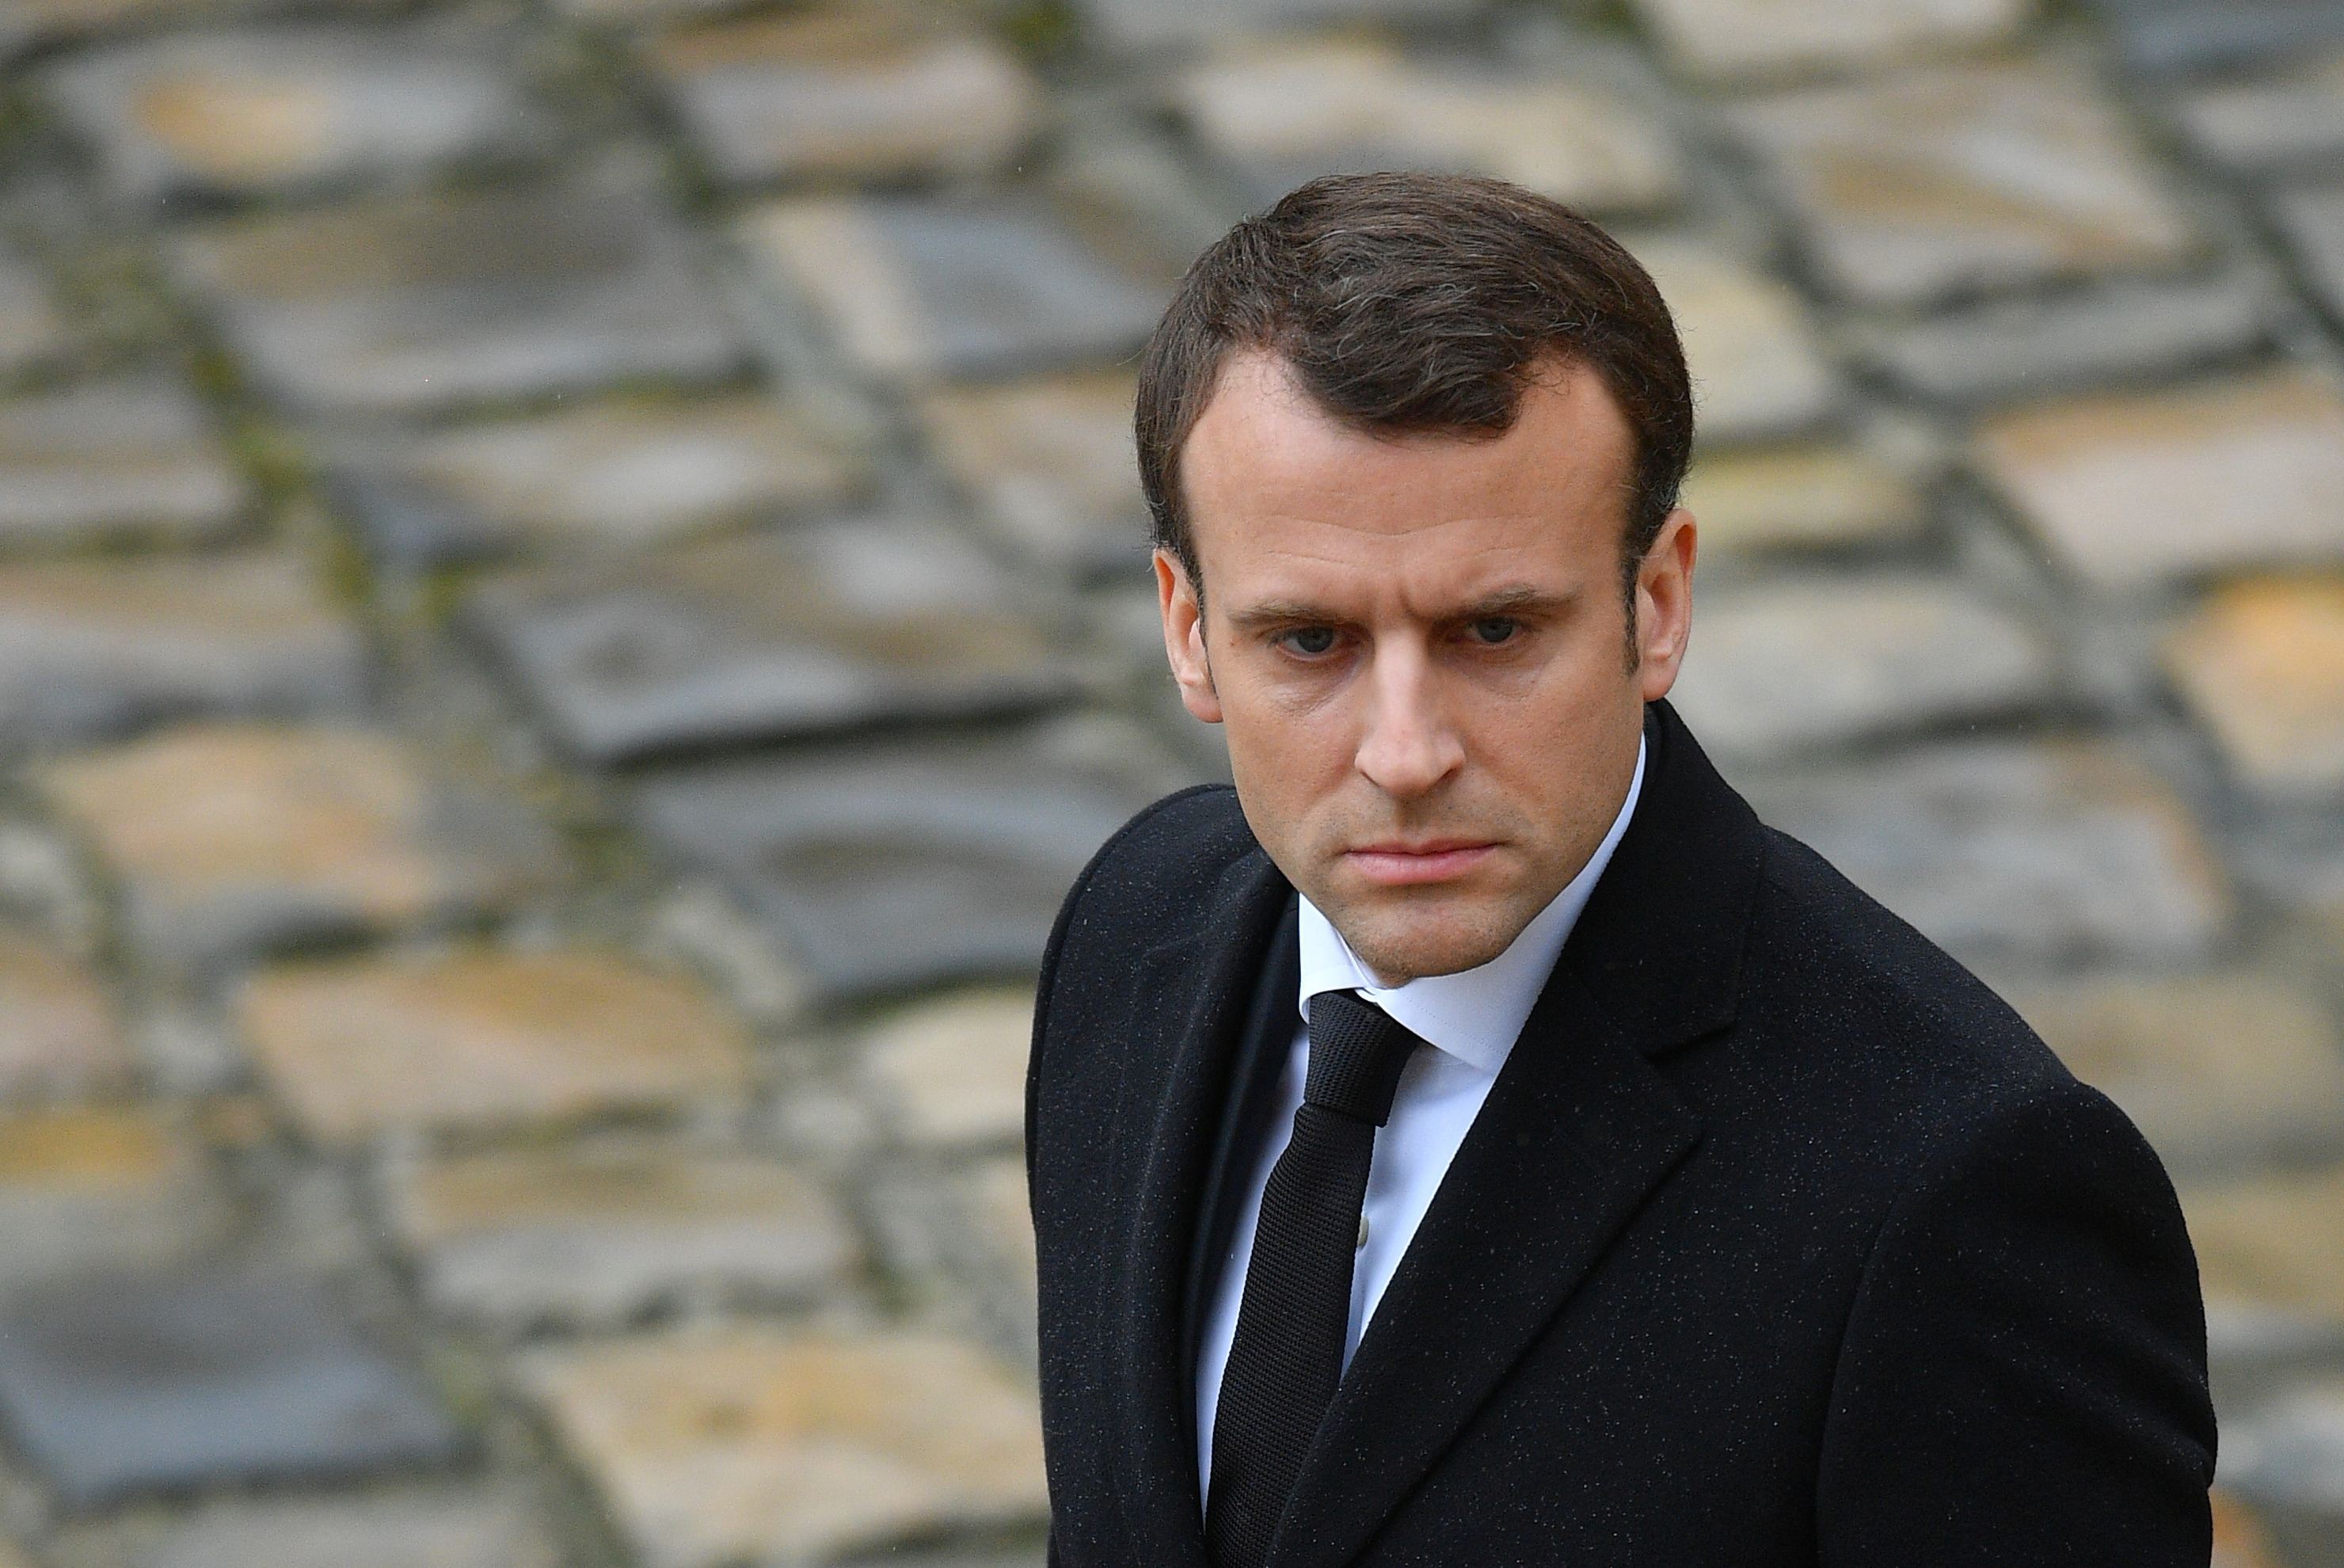 Gaura bugetară uriaşă din Franţa pune sub semnul capacităţile preşedintelui Emmanuel Macron de a rezolva provocările fiscale ale ţării